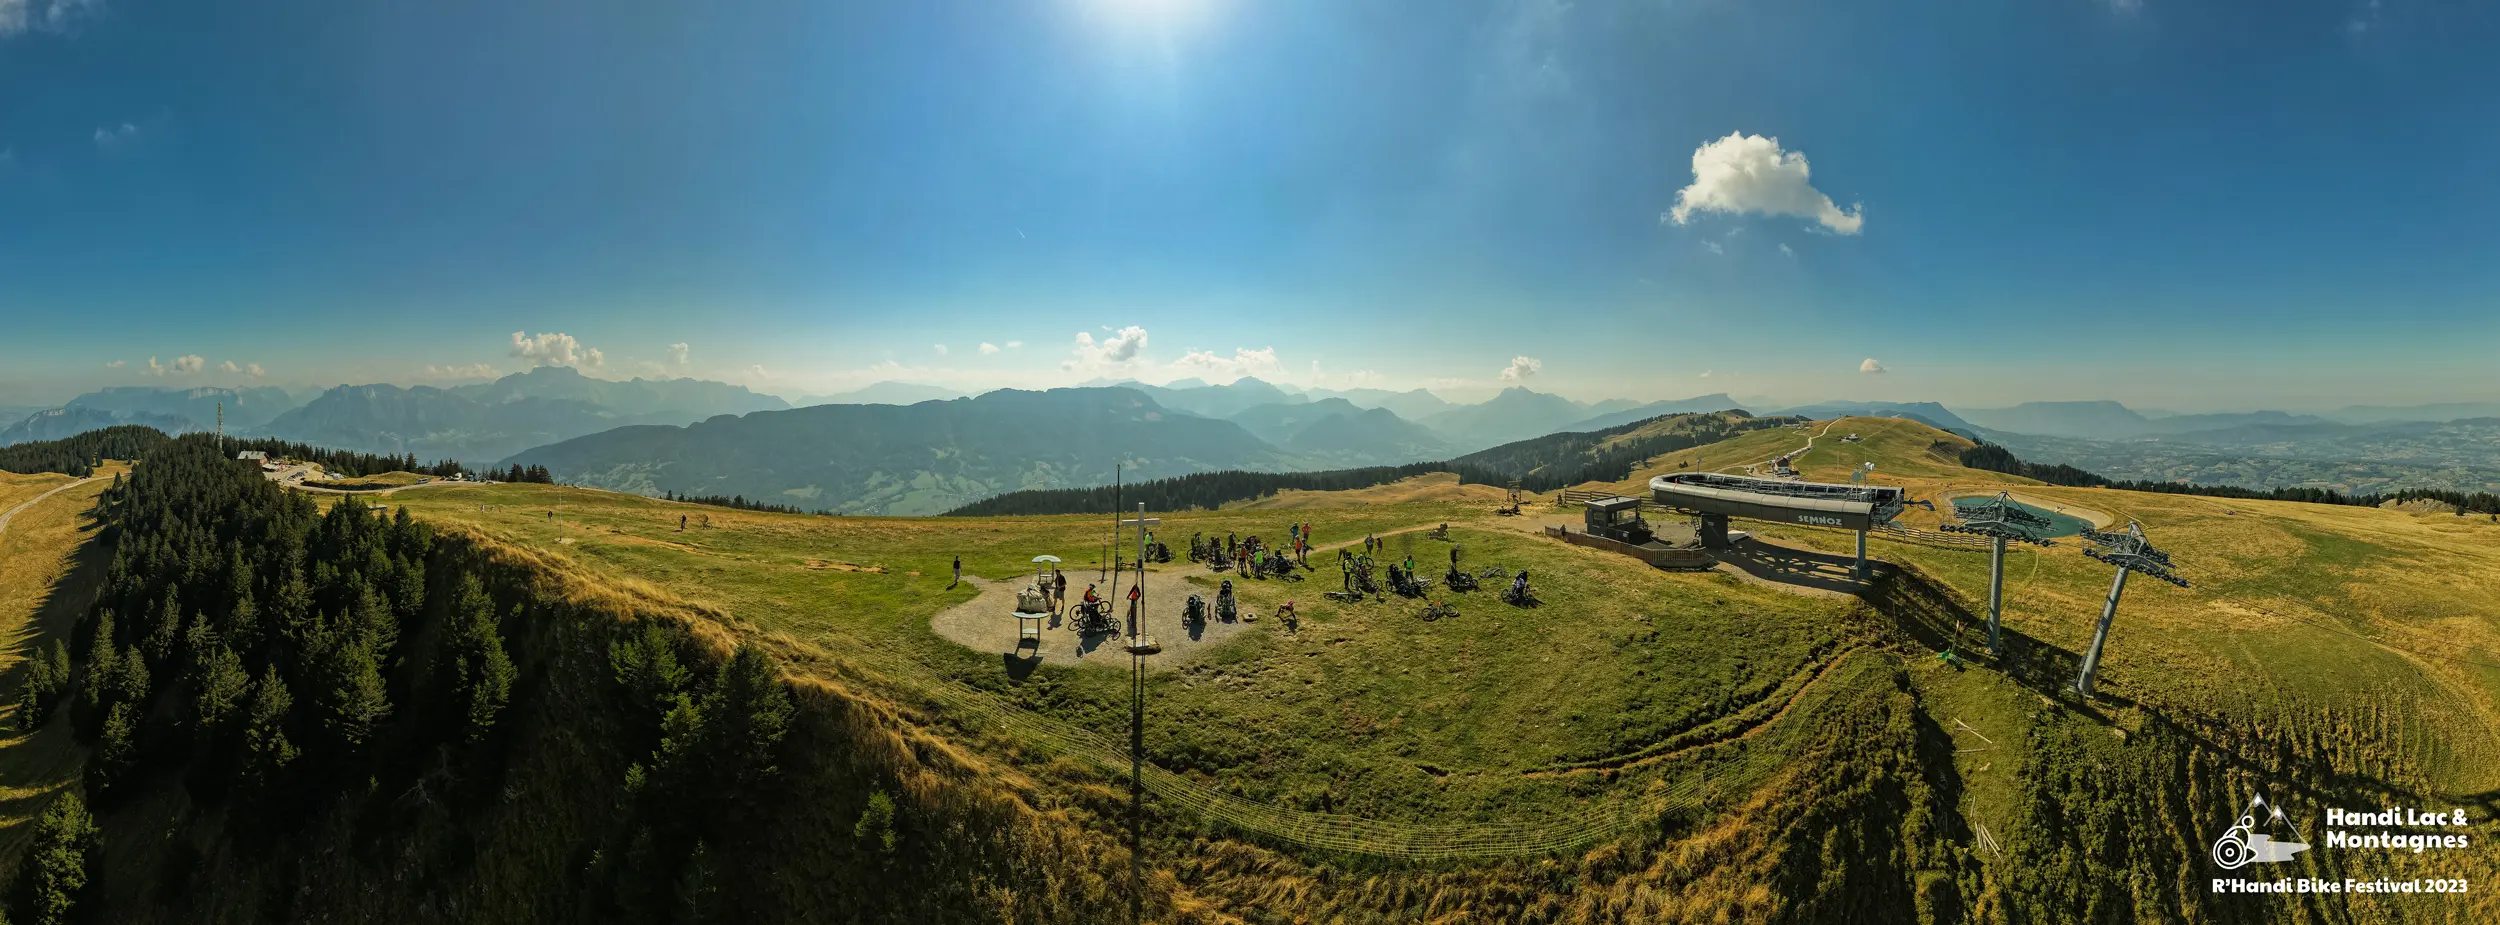 Vue panoramique aérienne des participants R'Handi Bike Festival 2023 au sommet du Semnoz